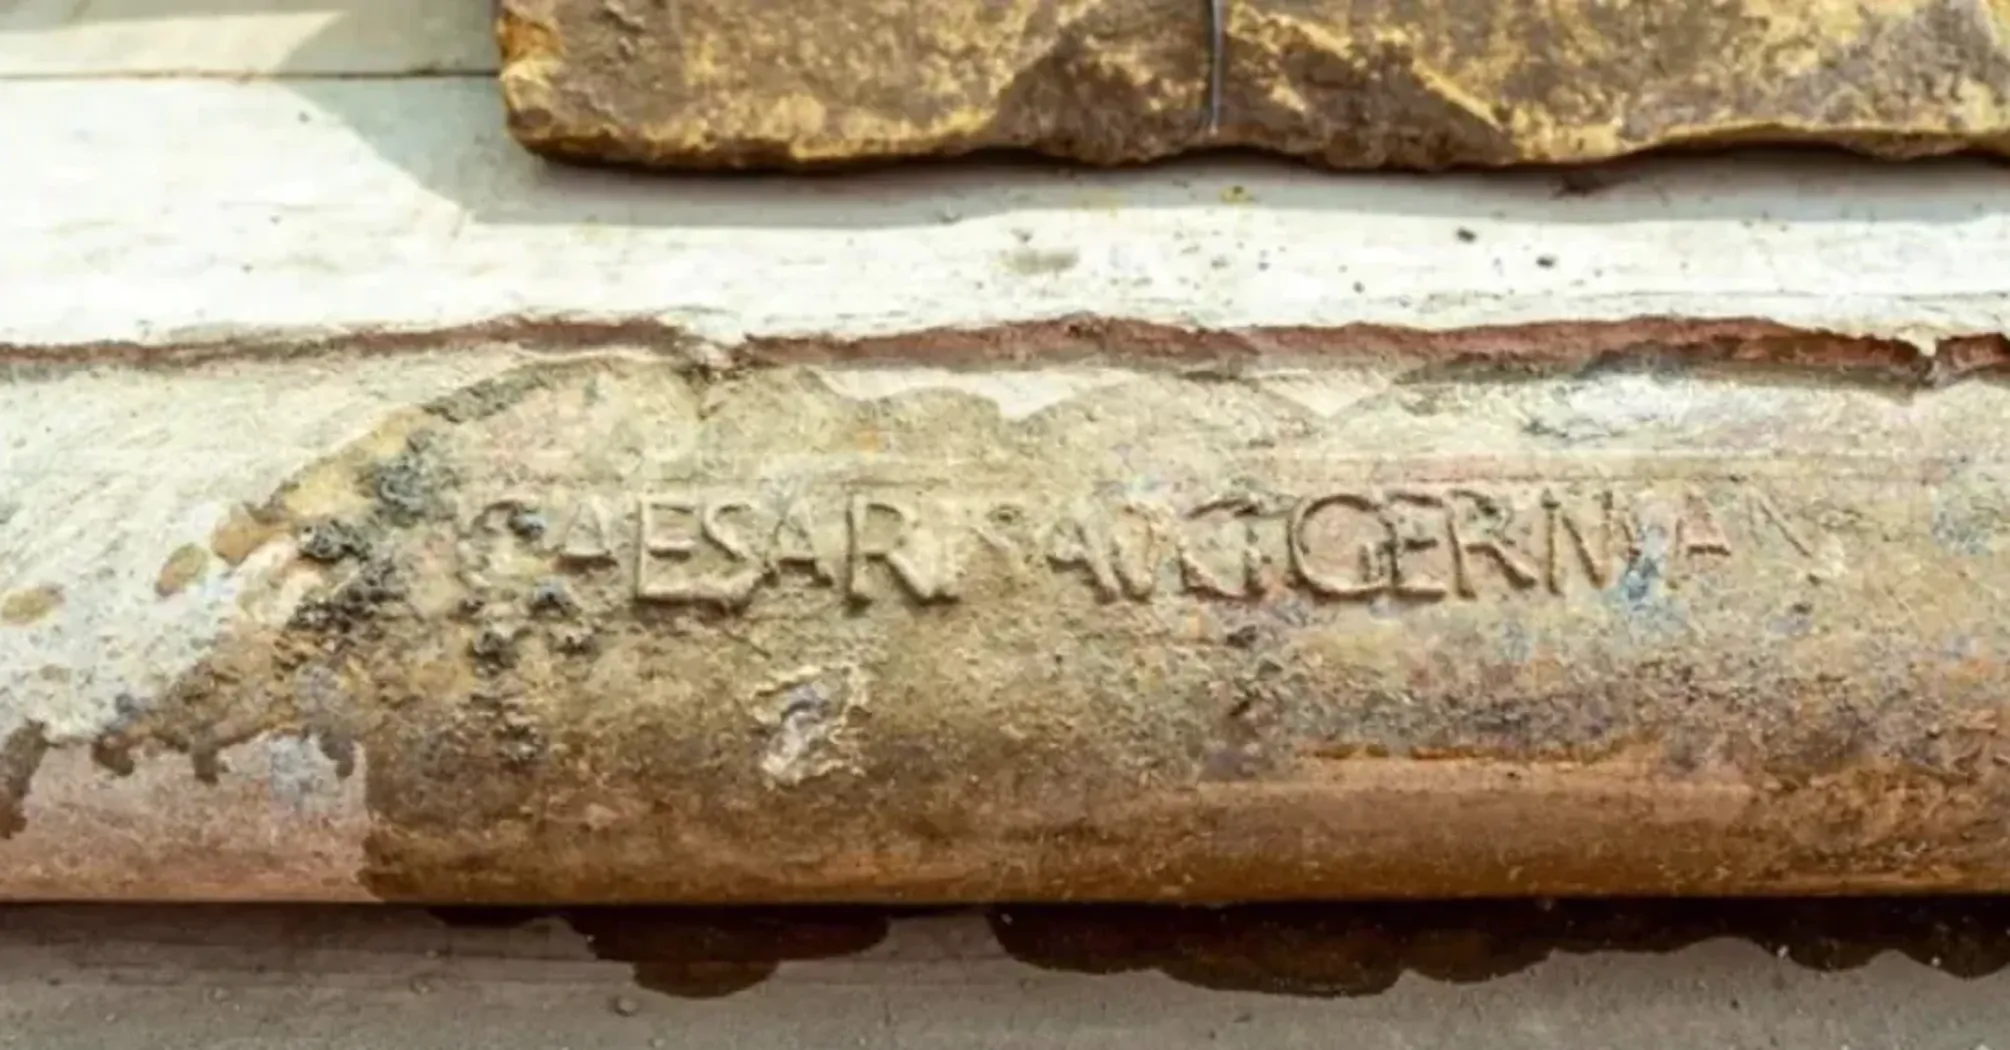 Поражены были все: в Италии строители раскопали сад римского императора-садиста, которому 2000 лет (фото)